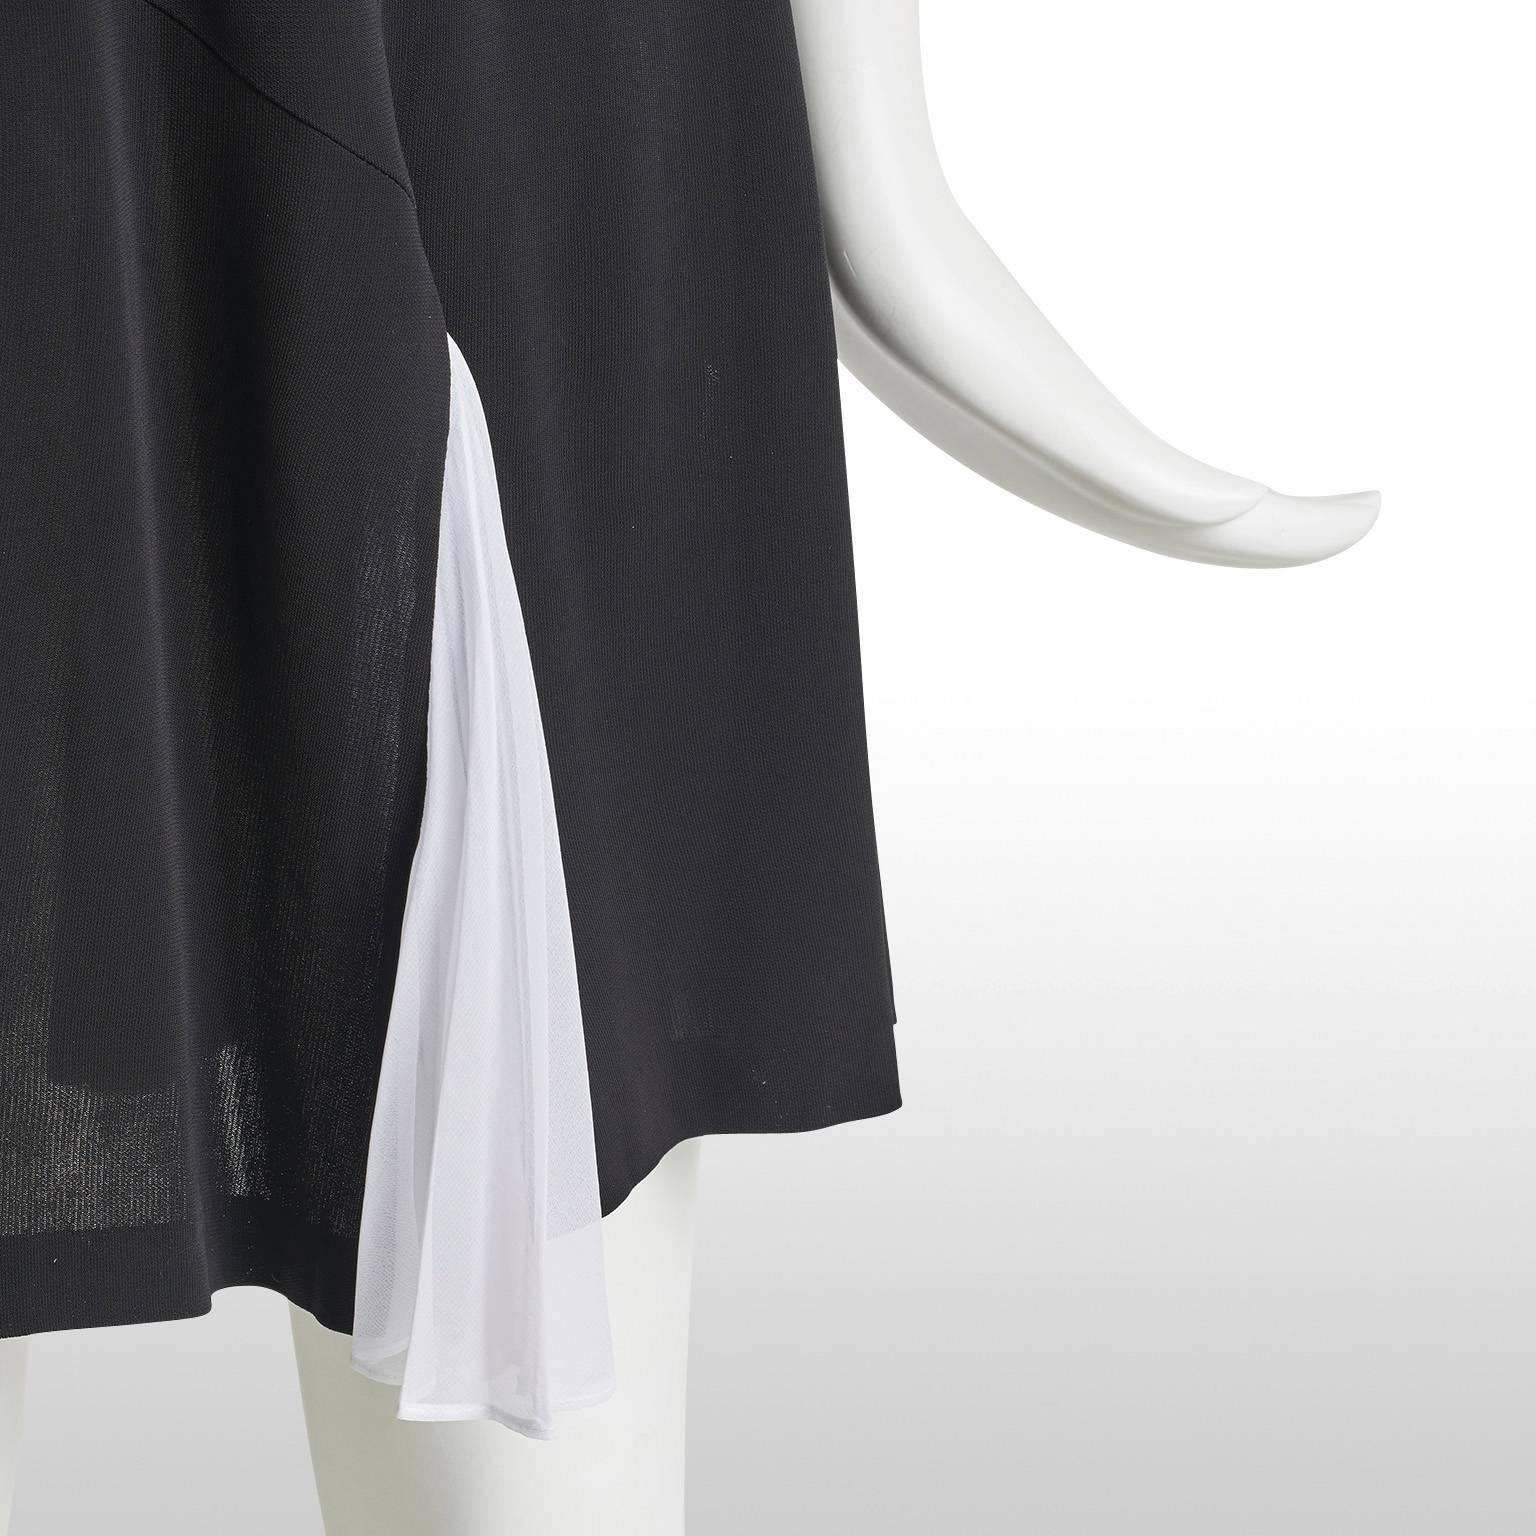  Diane Von Furstenberg Black and White Halter Neck Dress  For Sale 3